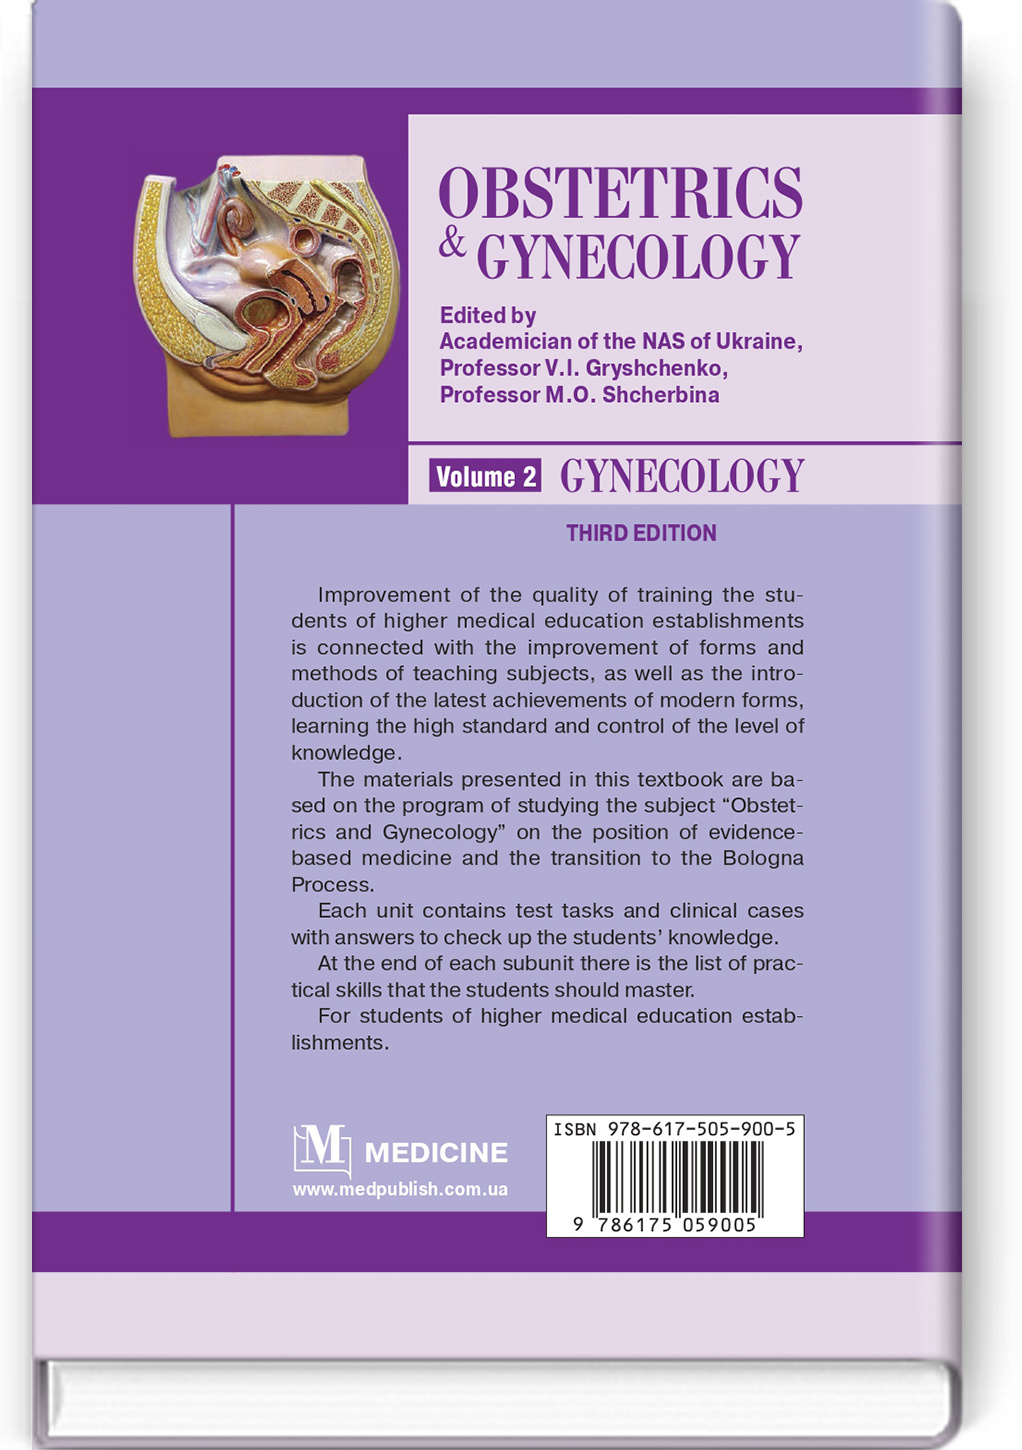 Obstetrics and Gynecology: in 2 volumes. Volume 2. Gynecology: textbook. Автор — M.O. Shcherbina, B.M. Ventskivskyi, V.V. Kaminskyi, L.B. Markin, L.V. Potapova, V.V. Lazurenko, O.V. Mertsalova, O.P. Lipko, I.M. Shcherbina, M.G. Gryshchenko, V.I. Gryshchenko. 